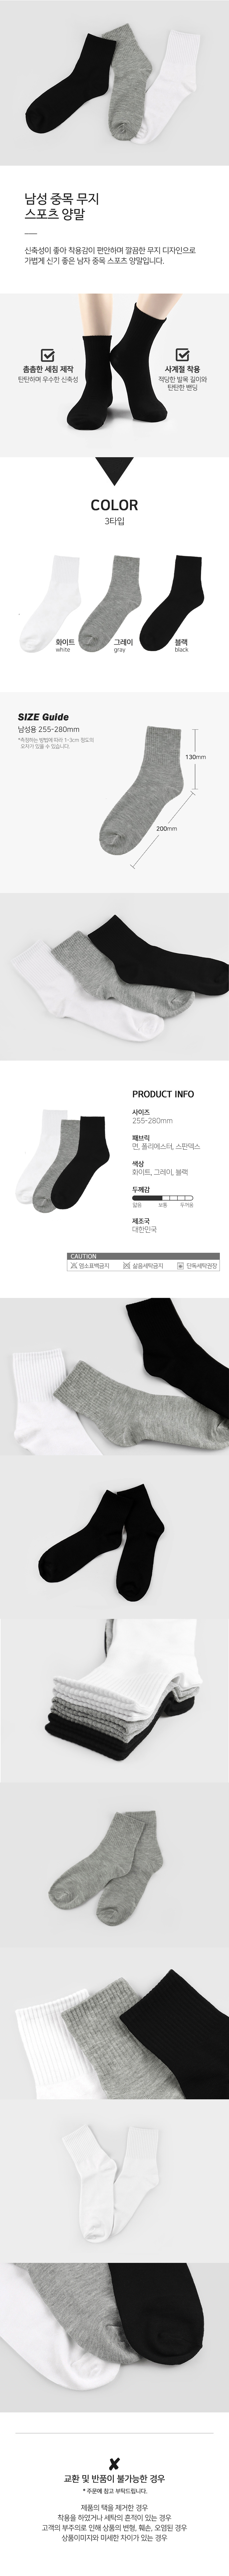 socks_00071.jpg